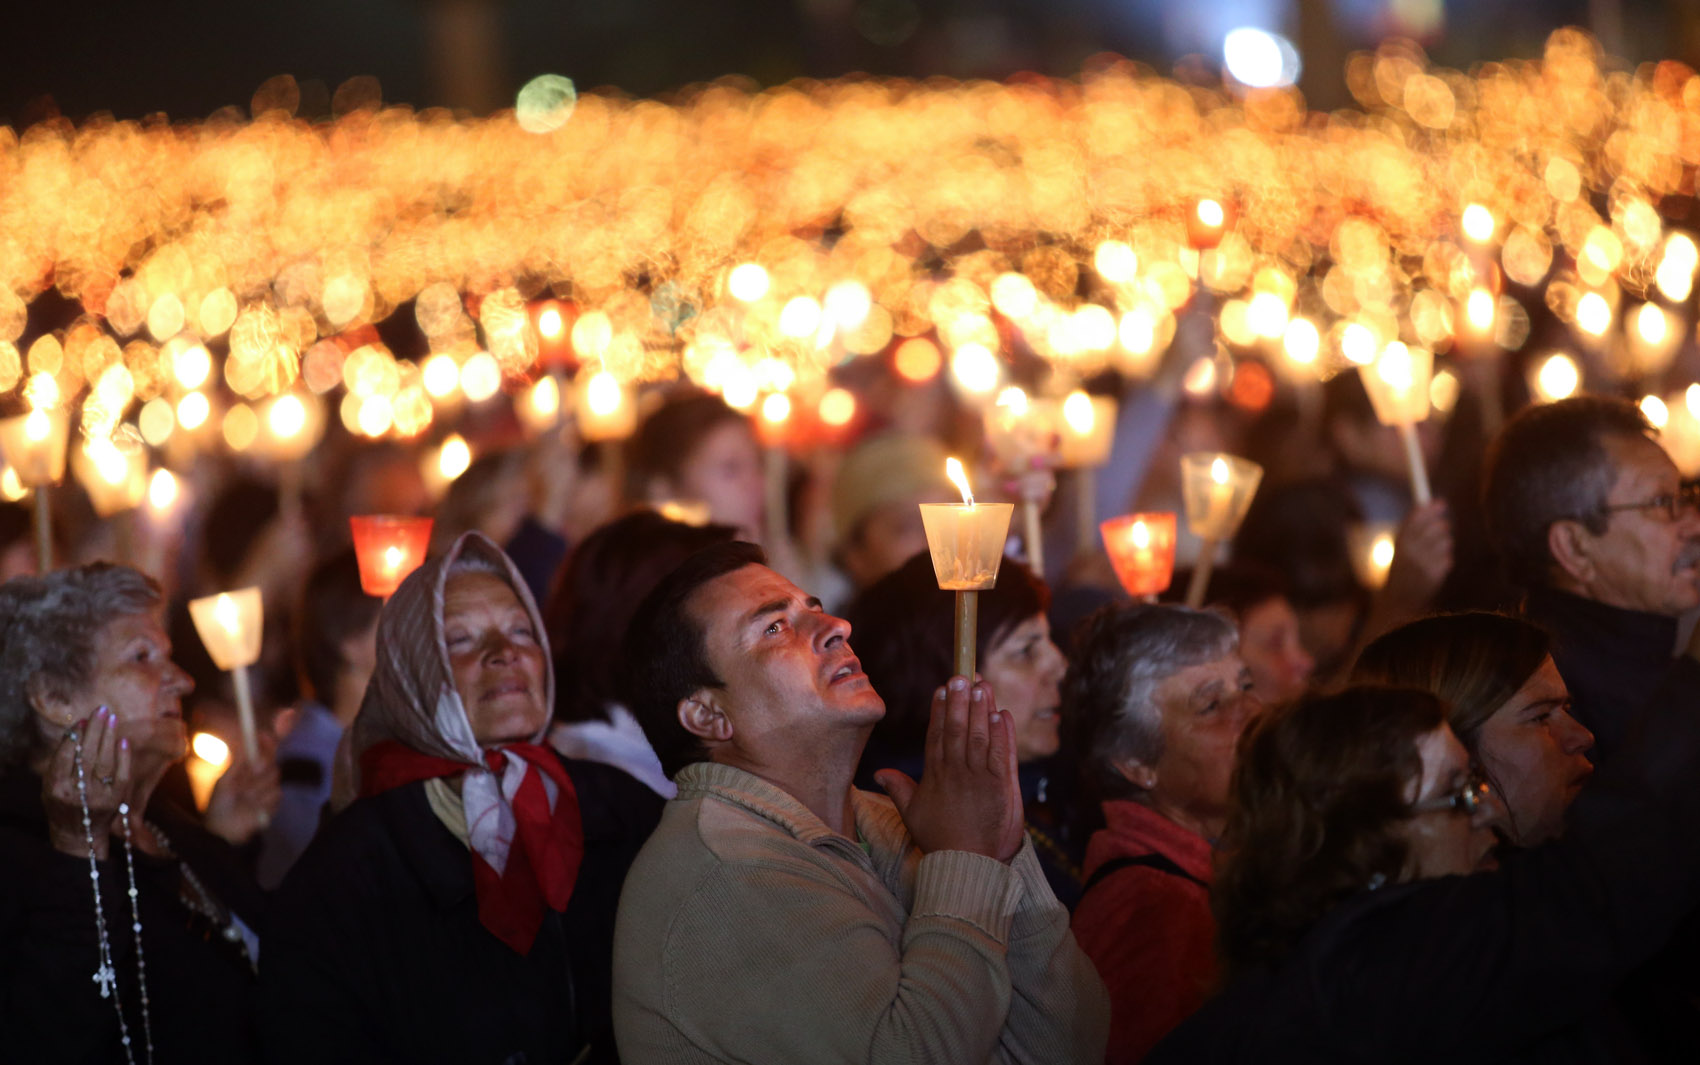 Adoradores rezam durante uma vigília à luz de velas no santuário Nossa Senhora de Fátima, em Portugal. Todos os anos, em 12 e 13 de maio, dezenas de milhares de fiéis católicos vão em peregrinação ao santuário da Fátima para rezar e participar de missas